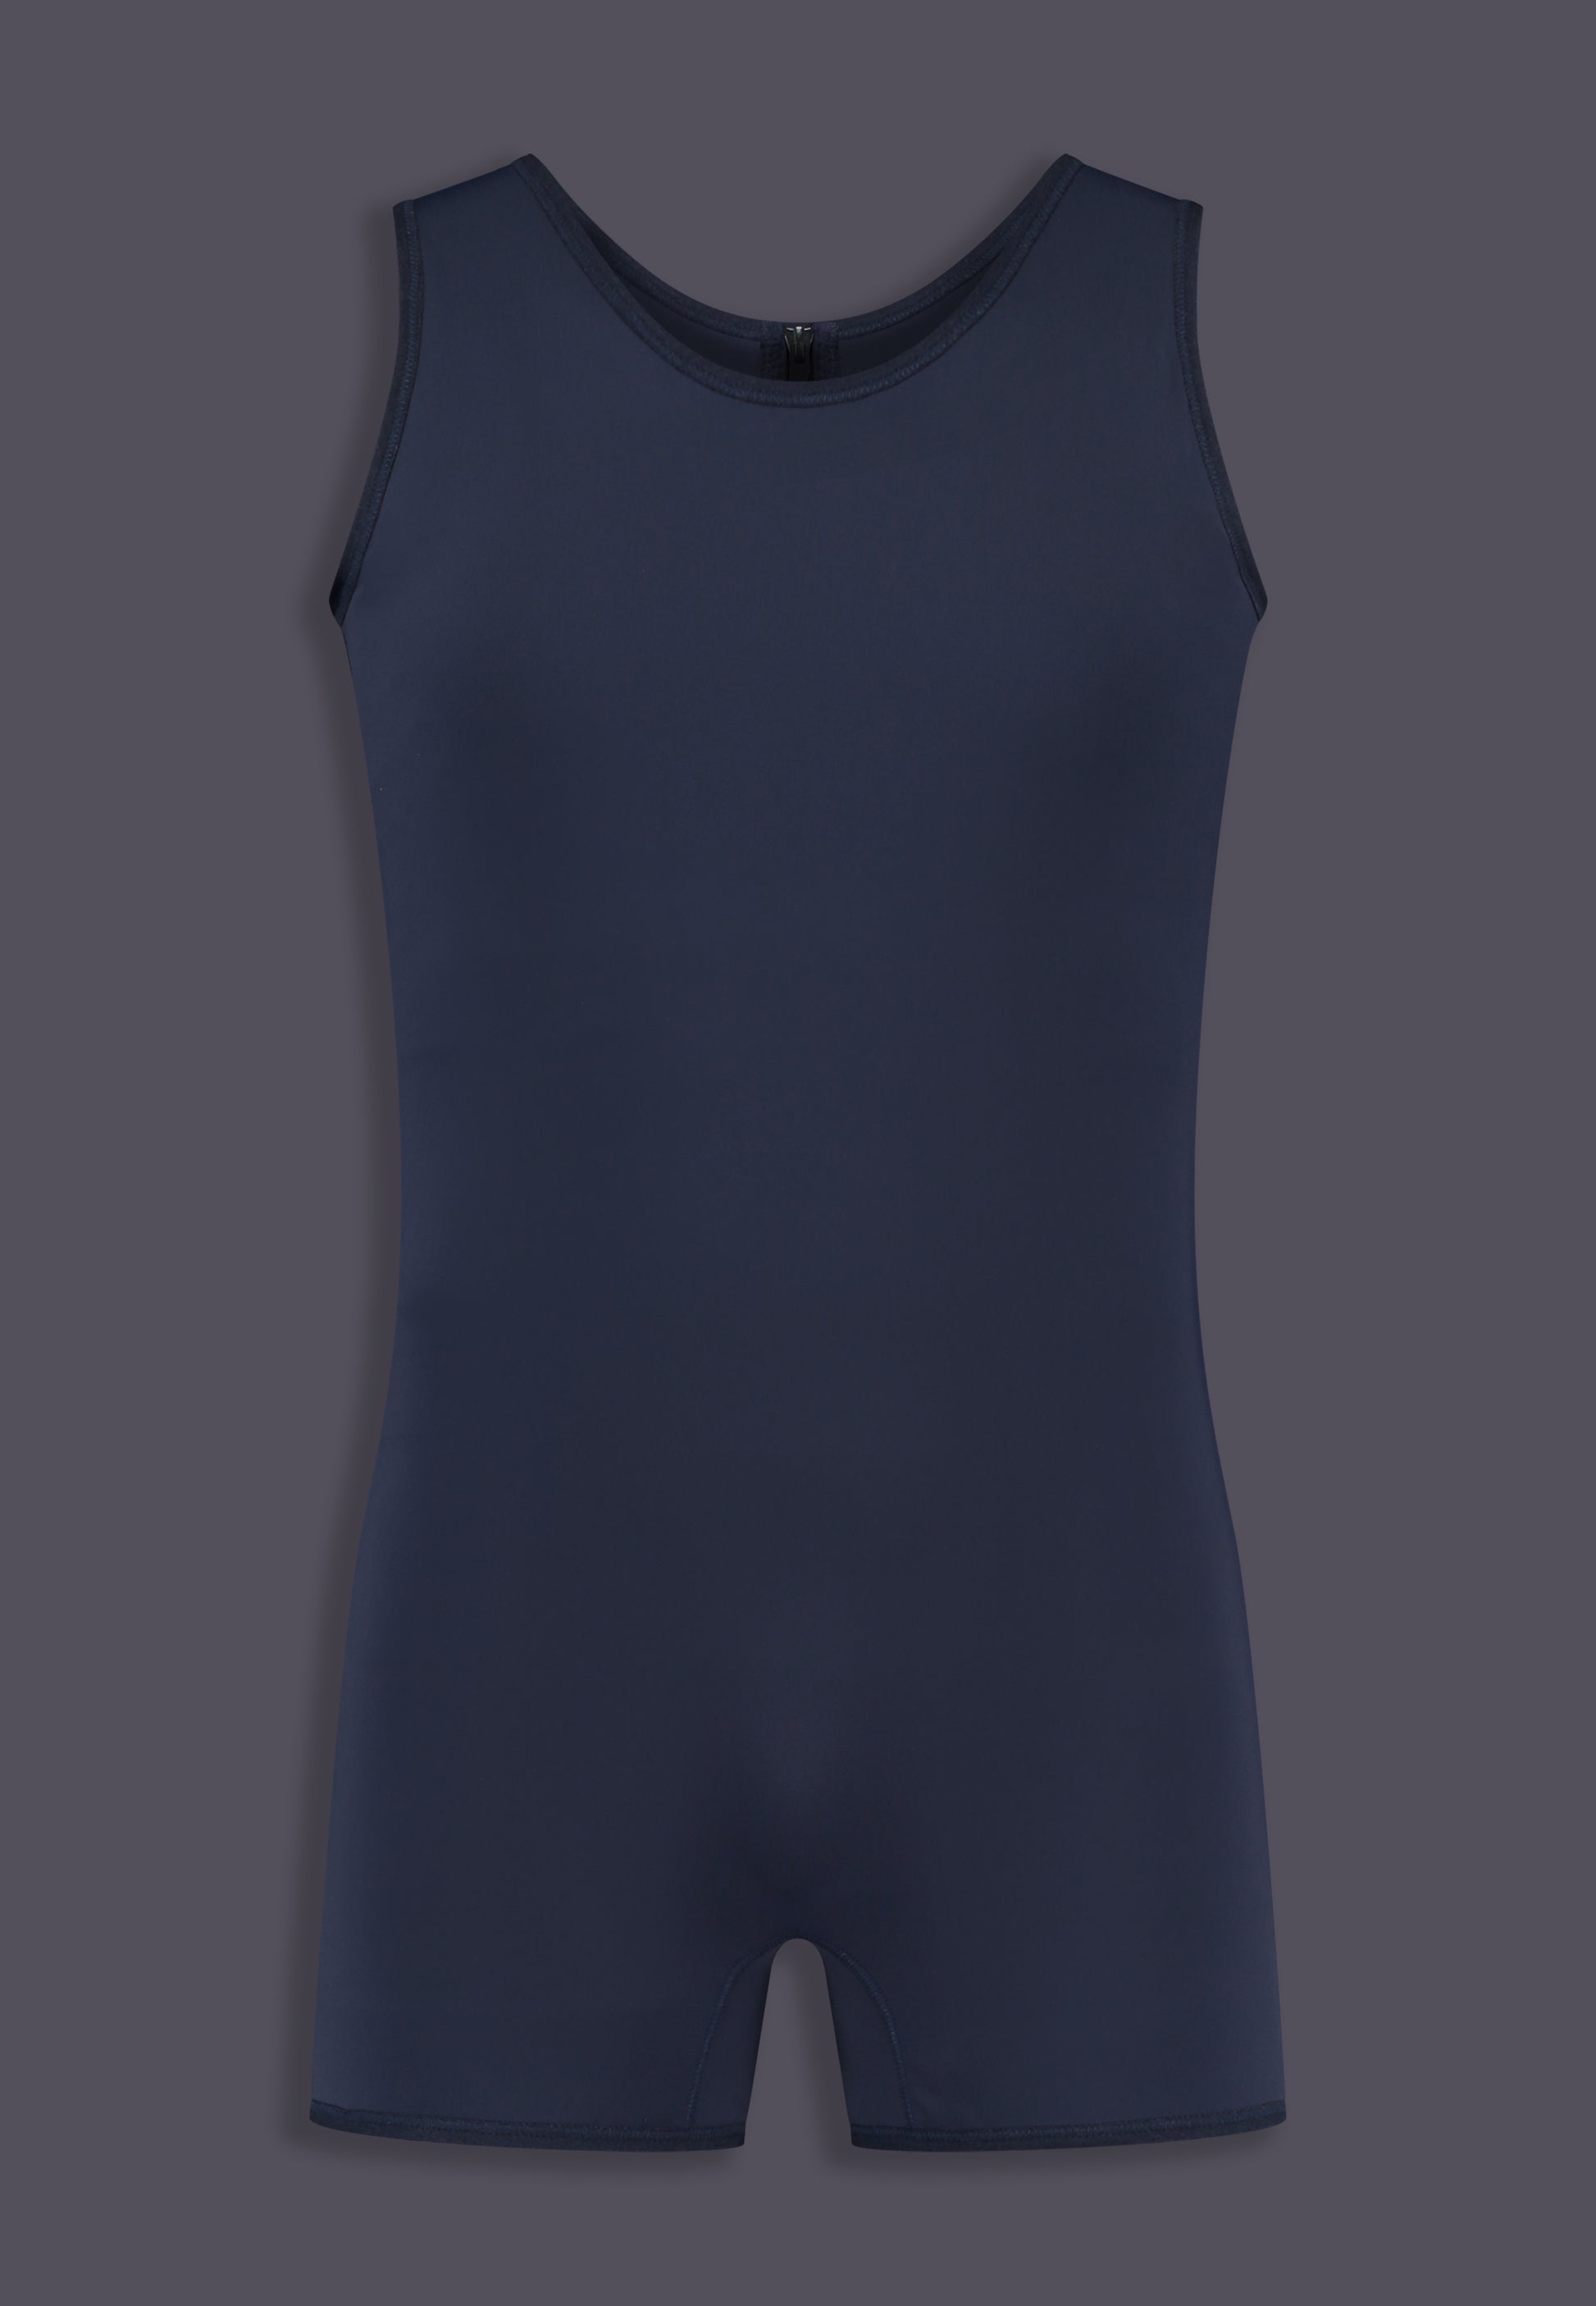 Swimsuit Binder dark blue, front view